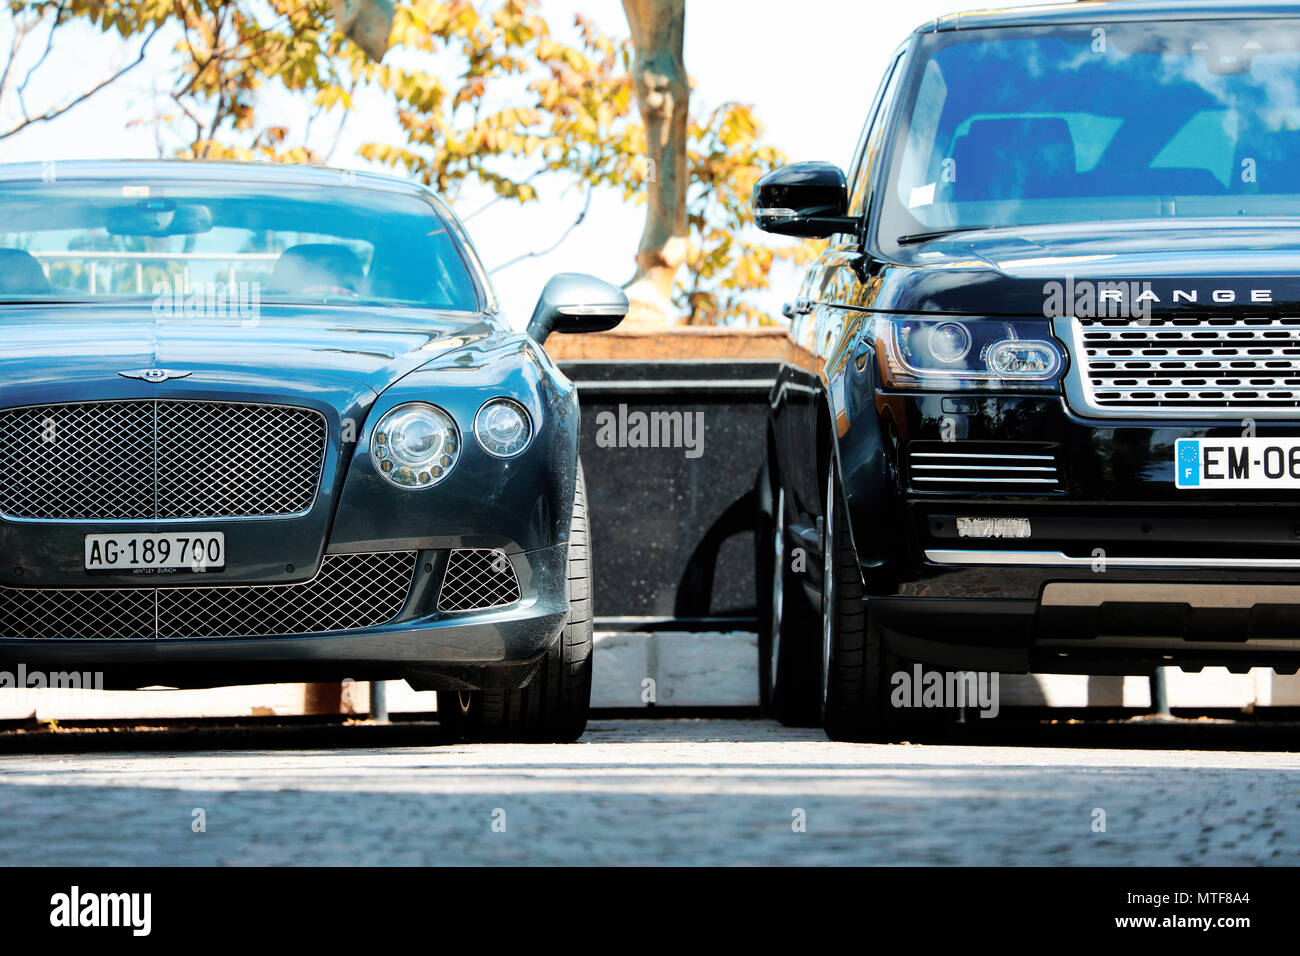 Eze, Francia - 17 Maggio 2018: lusso due vetture inglesi (Bentley Continental e Range Rover) sono allineati in un parcheggio di un hotel a 5 stelle a Eze Foto Stock